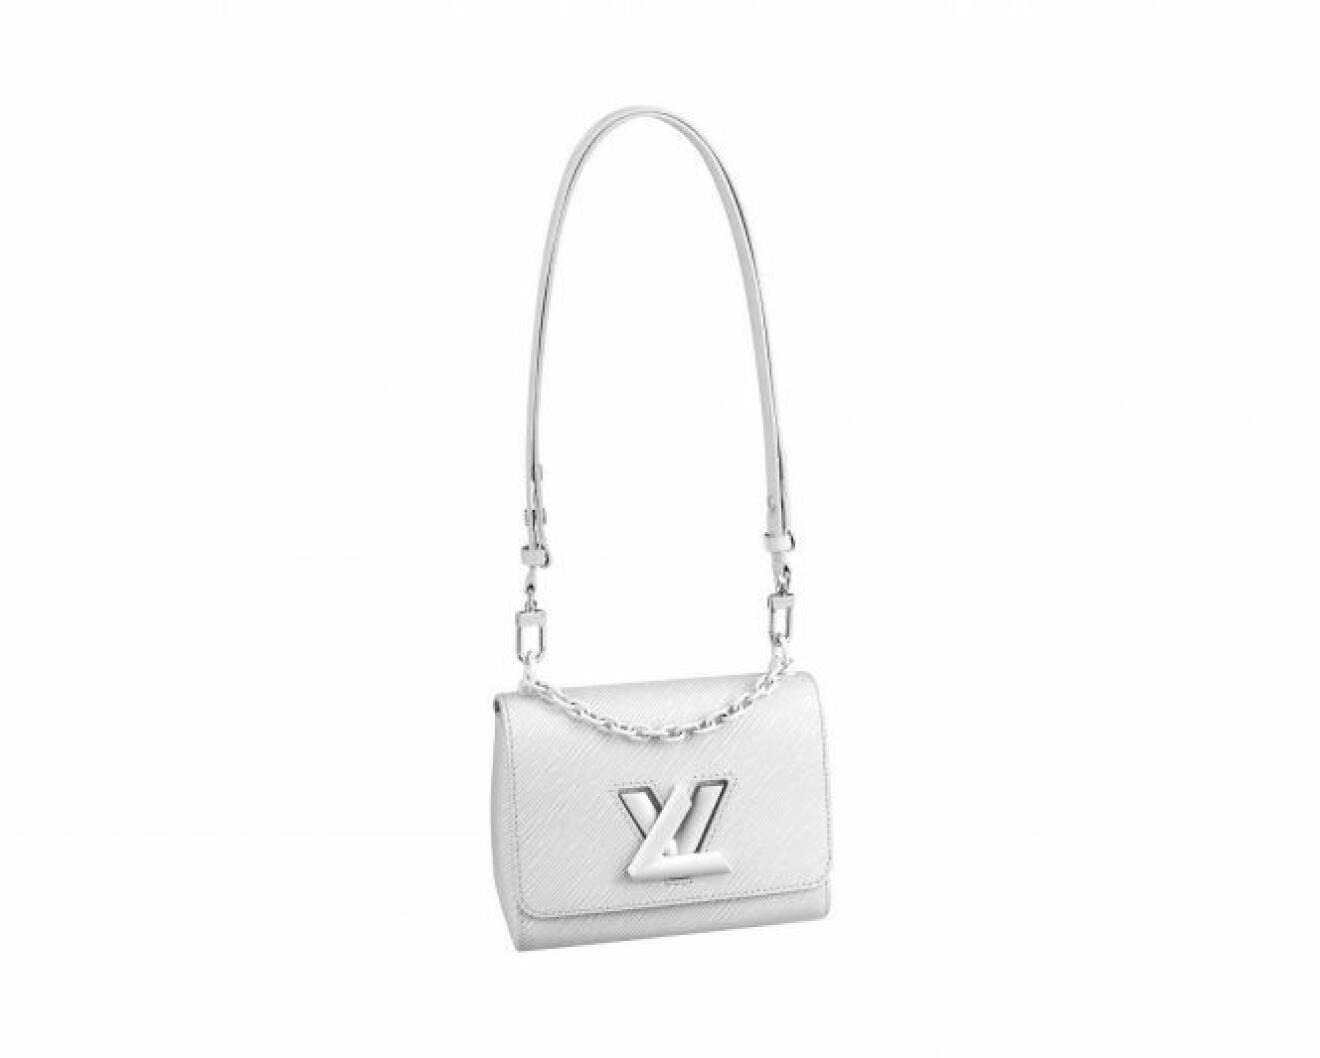 Väskan Twist bag från Louis Vuitton